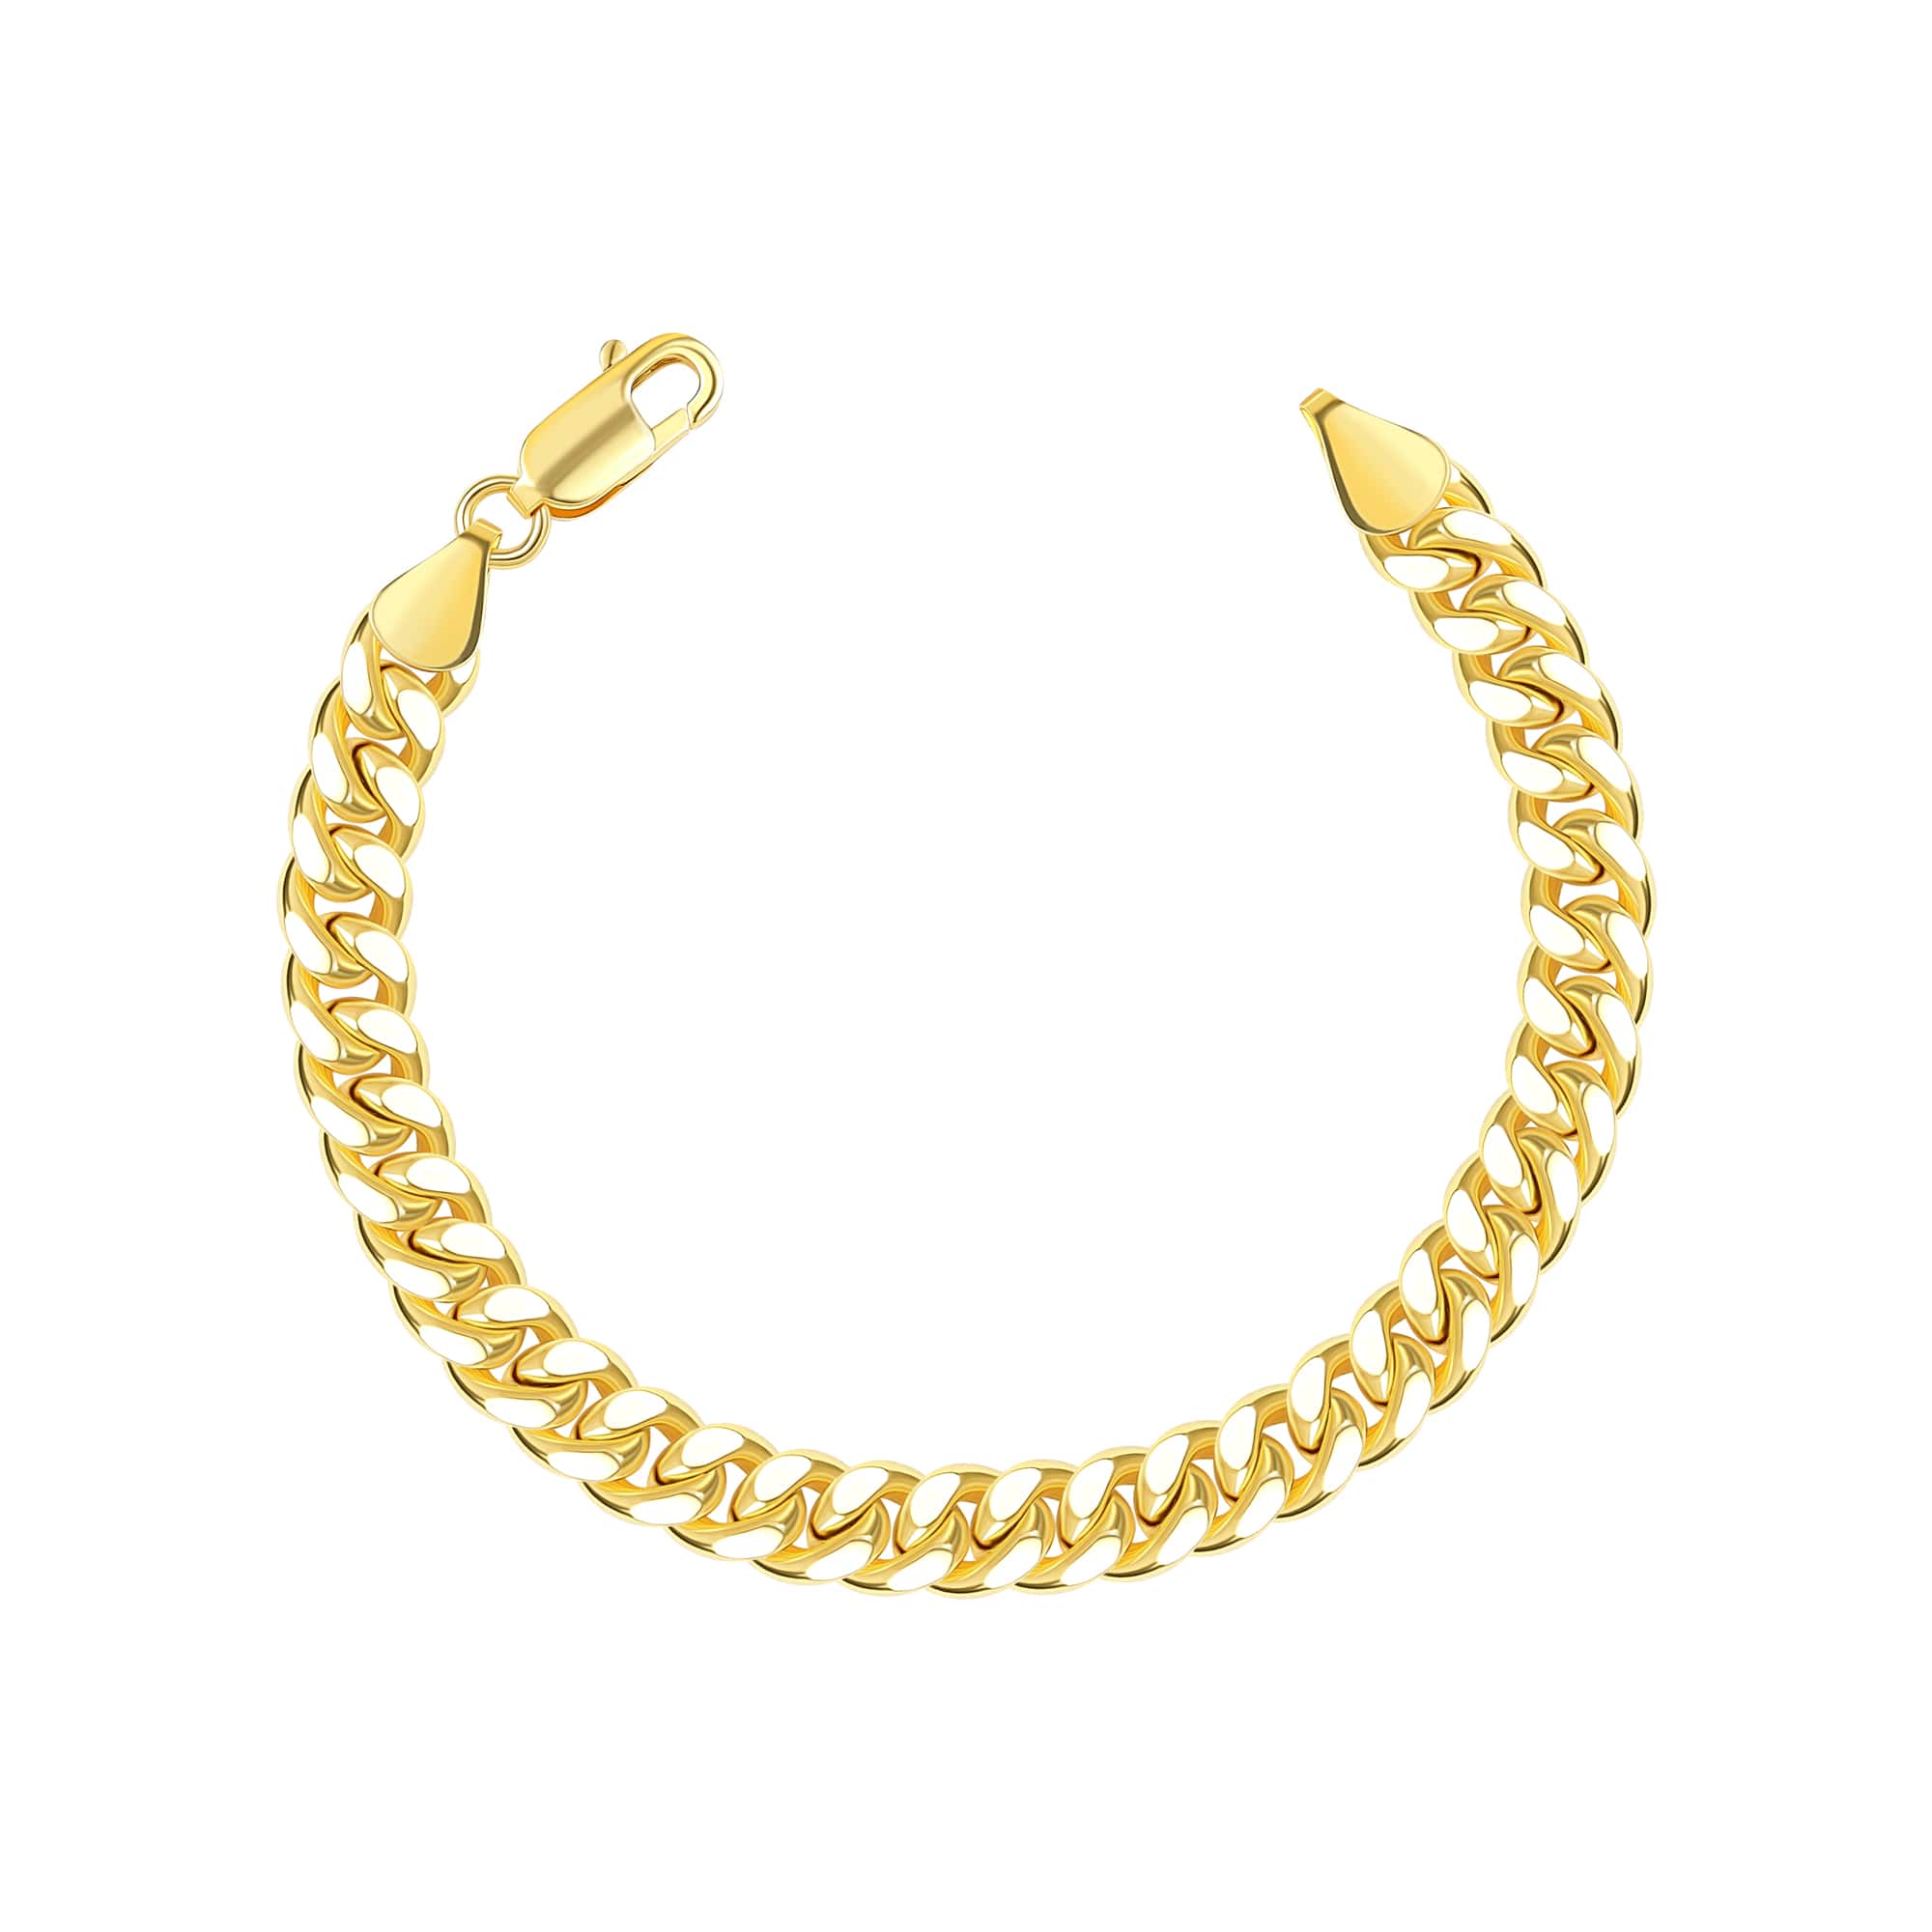 Stunning 22k Gold Men's Bracelet | Mens gold bracelets, Yellow gold bracelet,  Mens bracelet